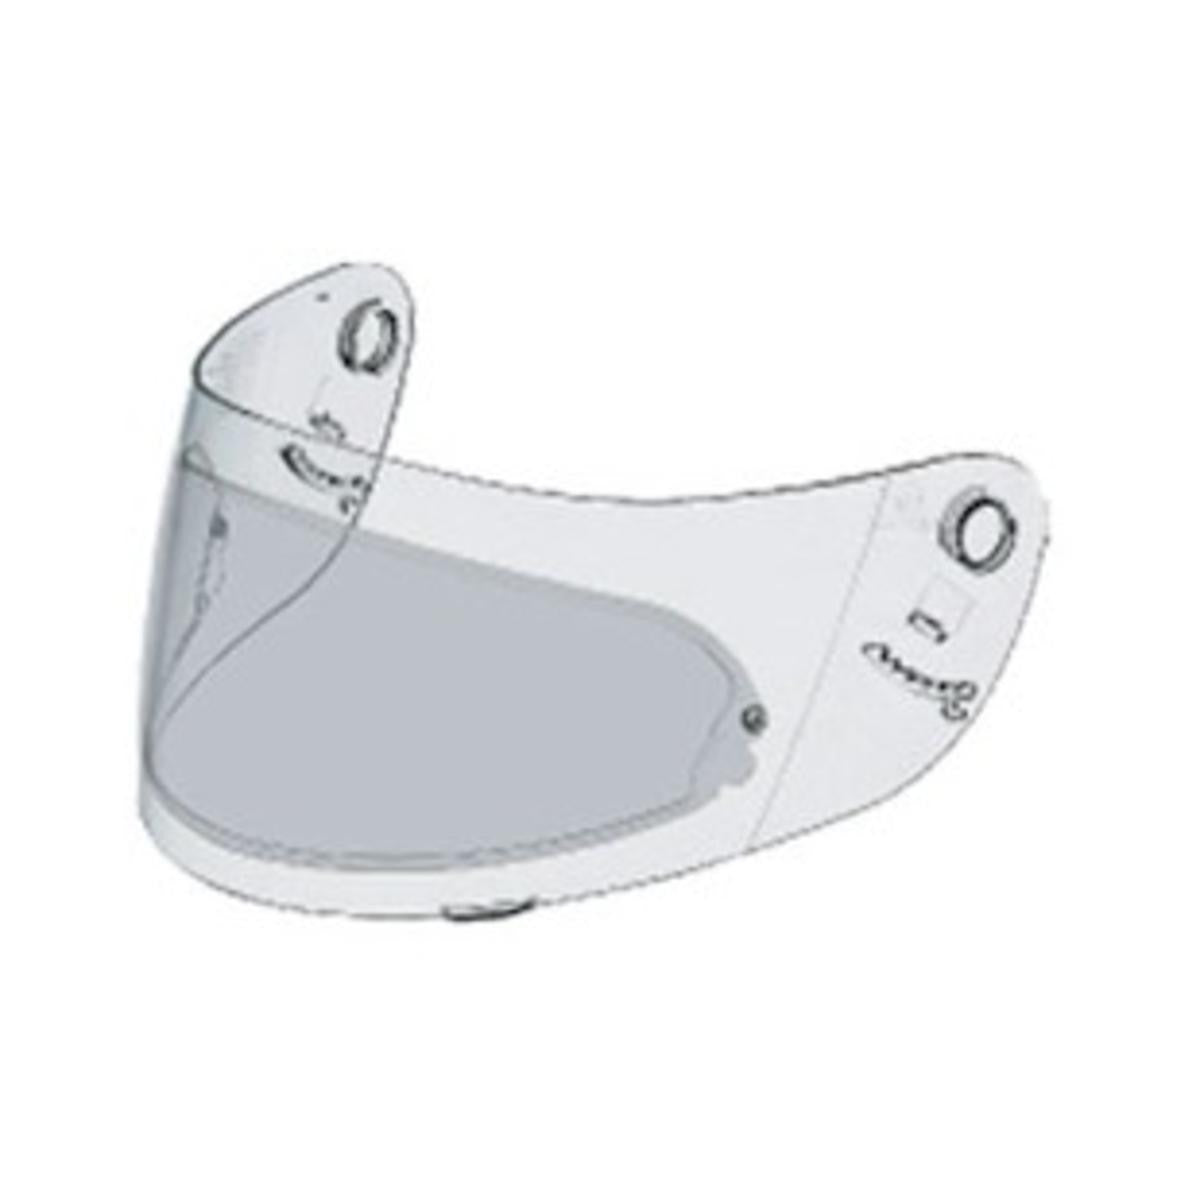 Shoei CX-1/1V Pinlock Lens Insert